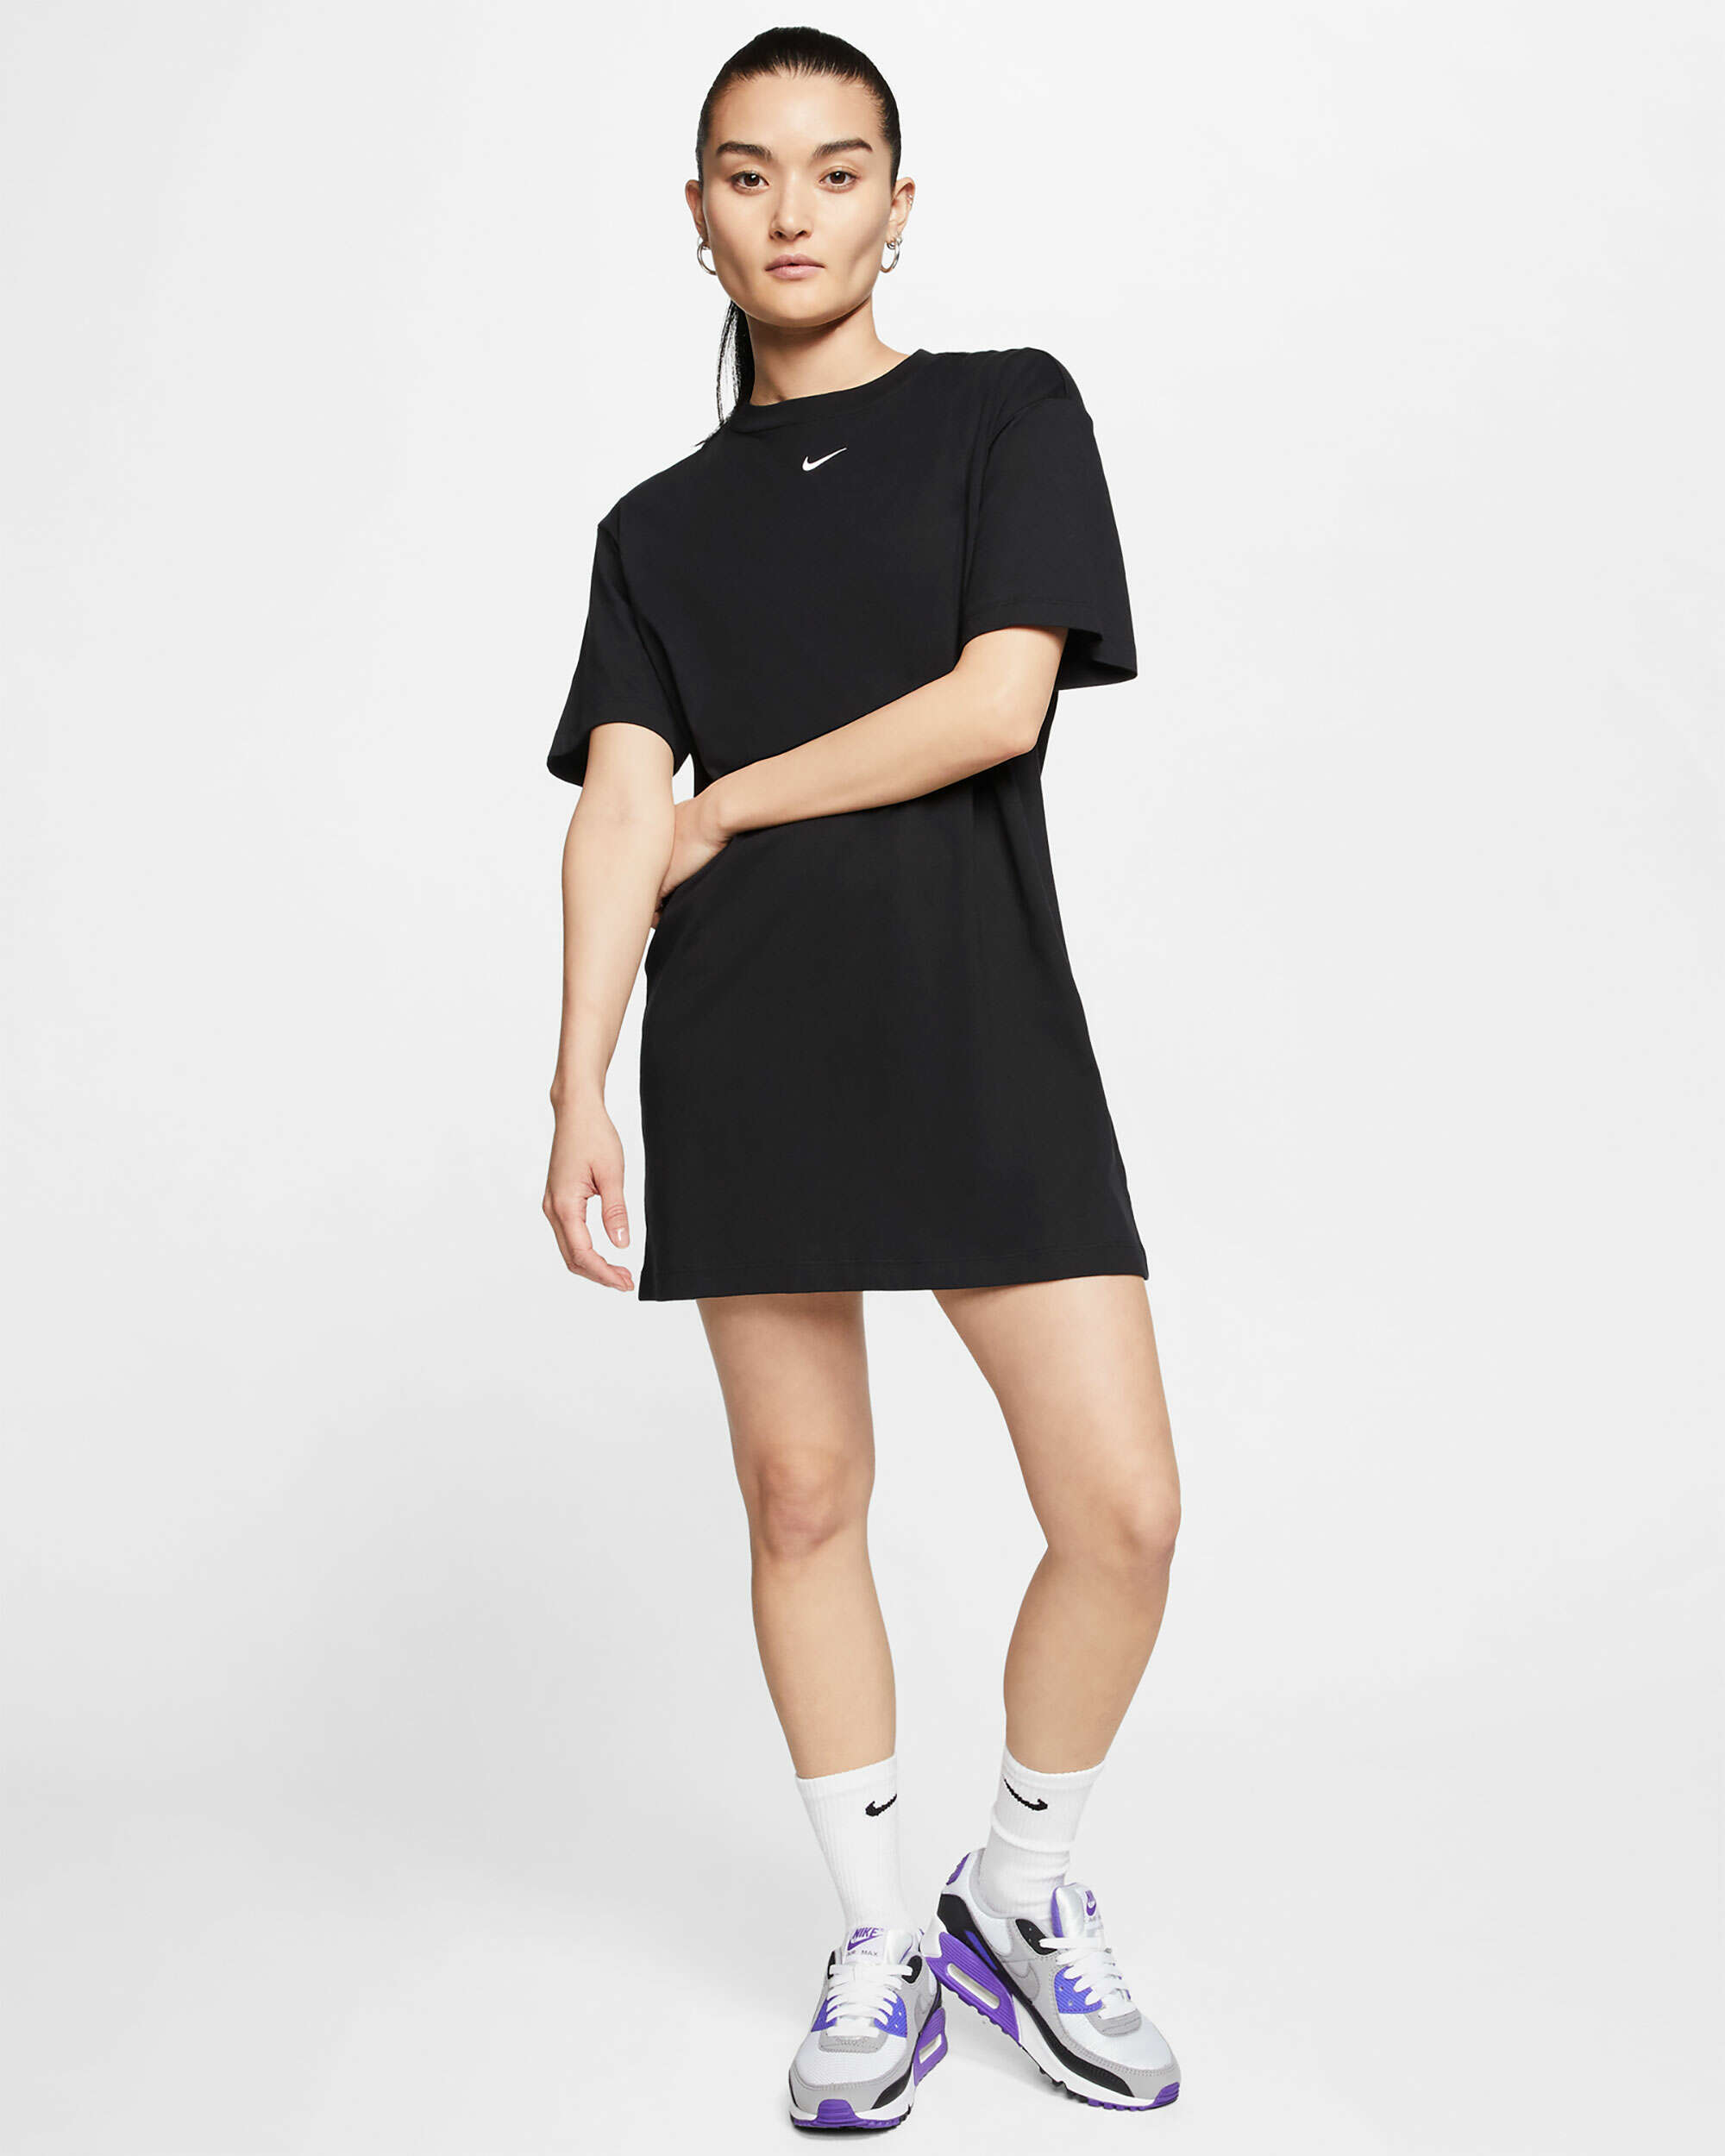 Nike Sportswear Women Black Essential T-Shirt Dress (CJ2242-010) Sizes  S/M/L/XL